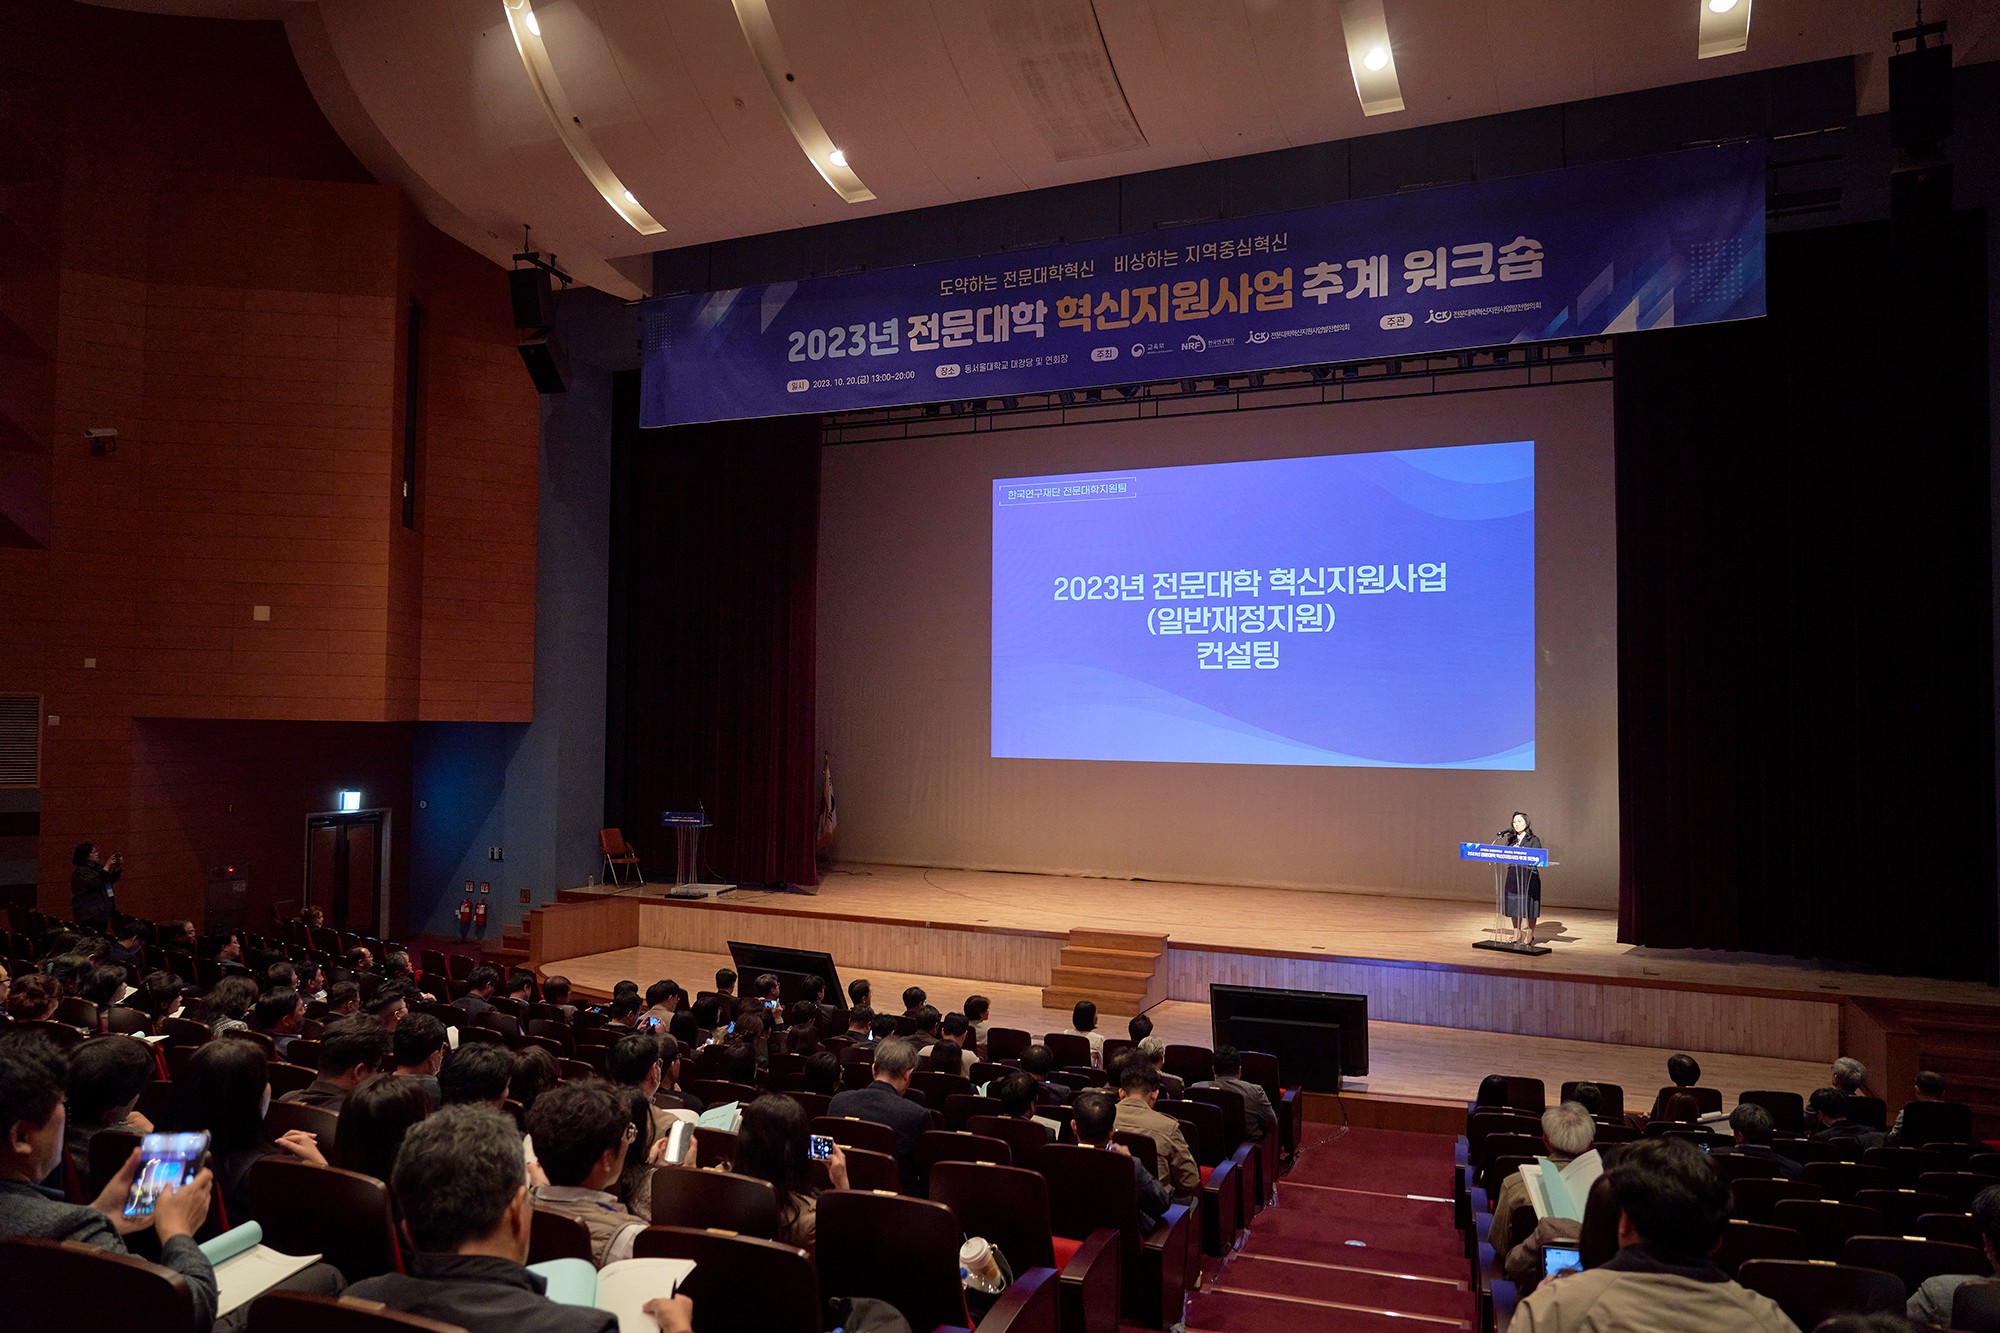  2023년 전문대학 혁신지원사업 추계 워크숍, 동서울대학교에서 개최